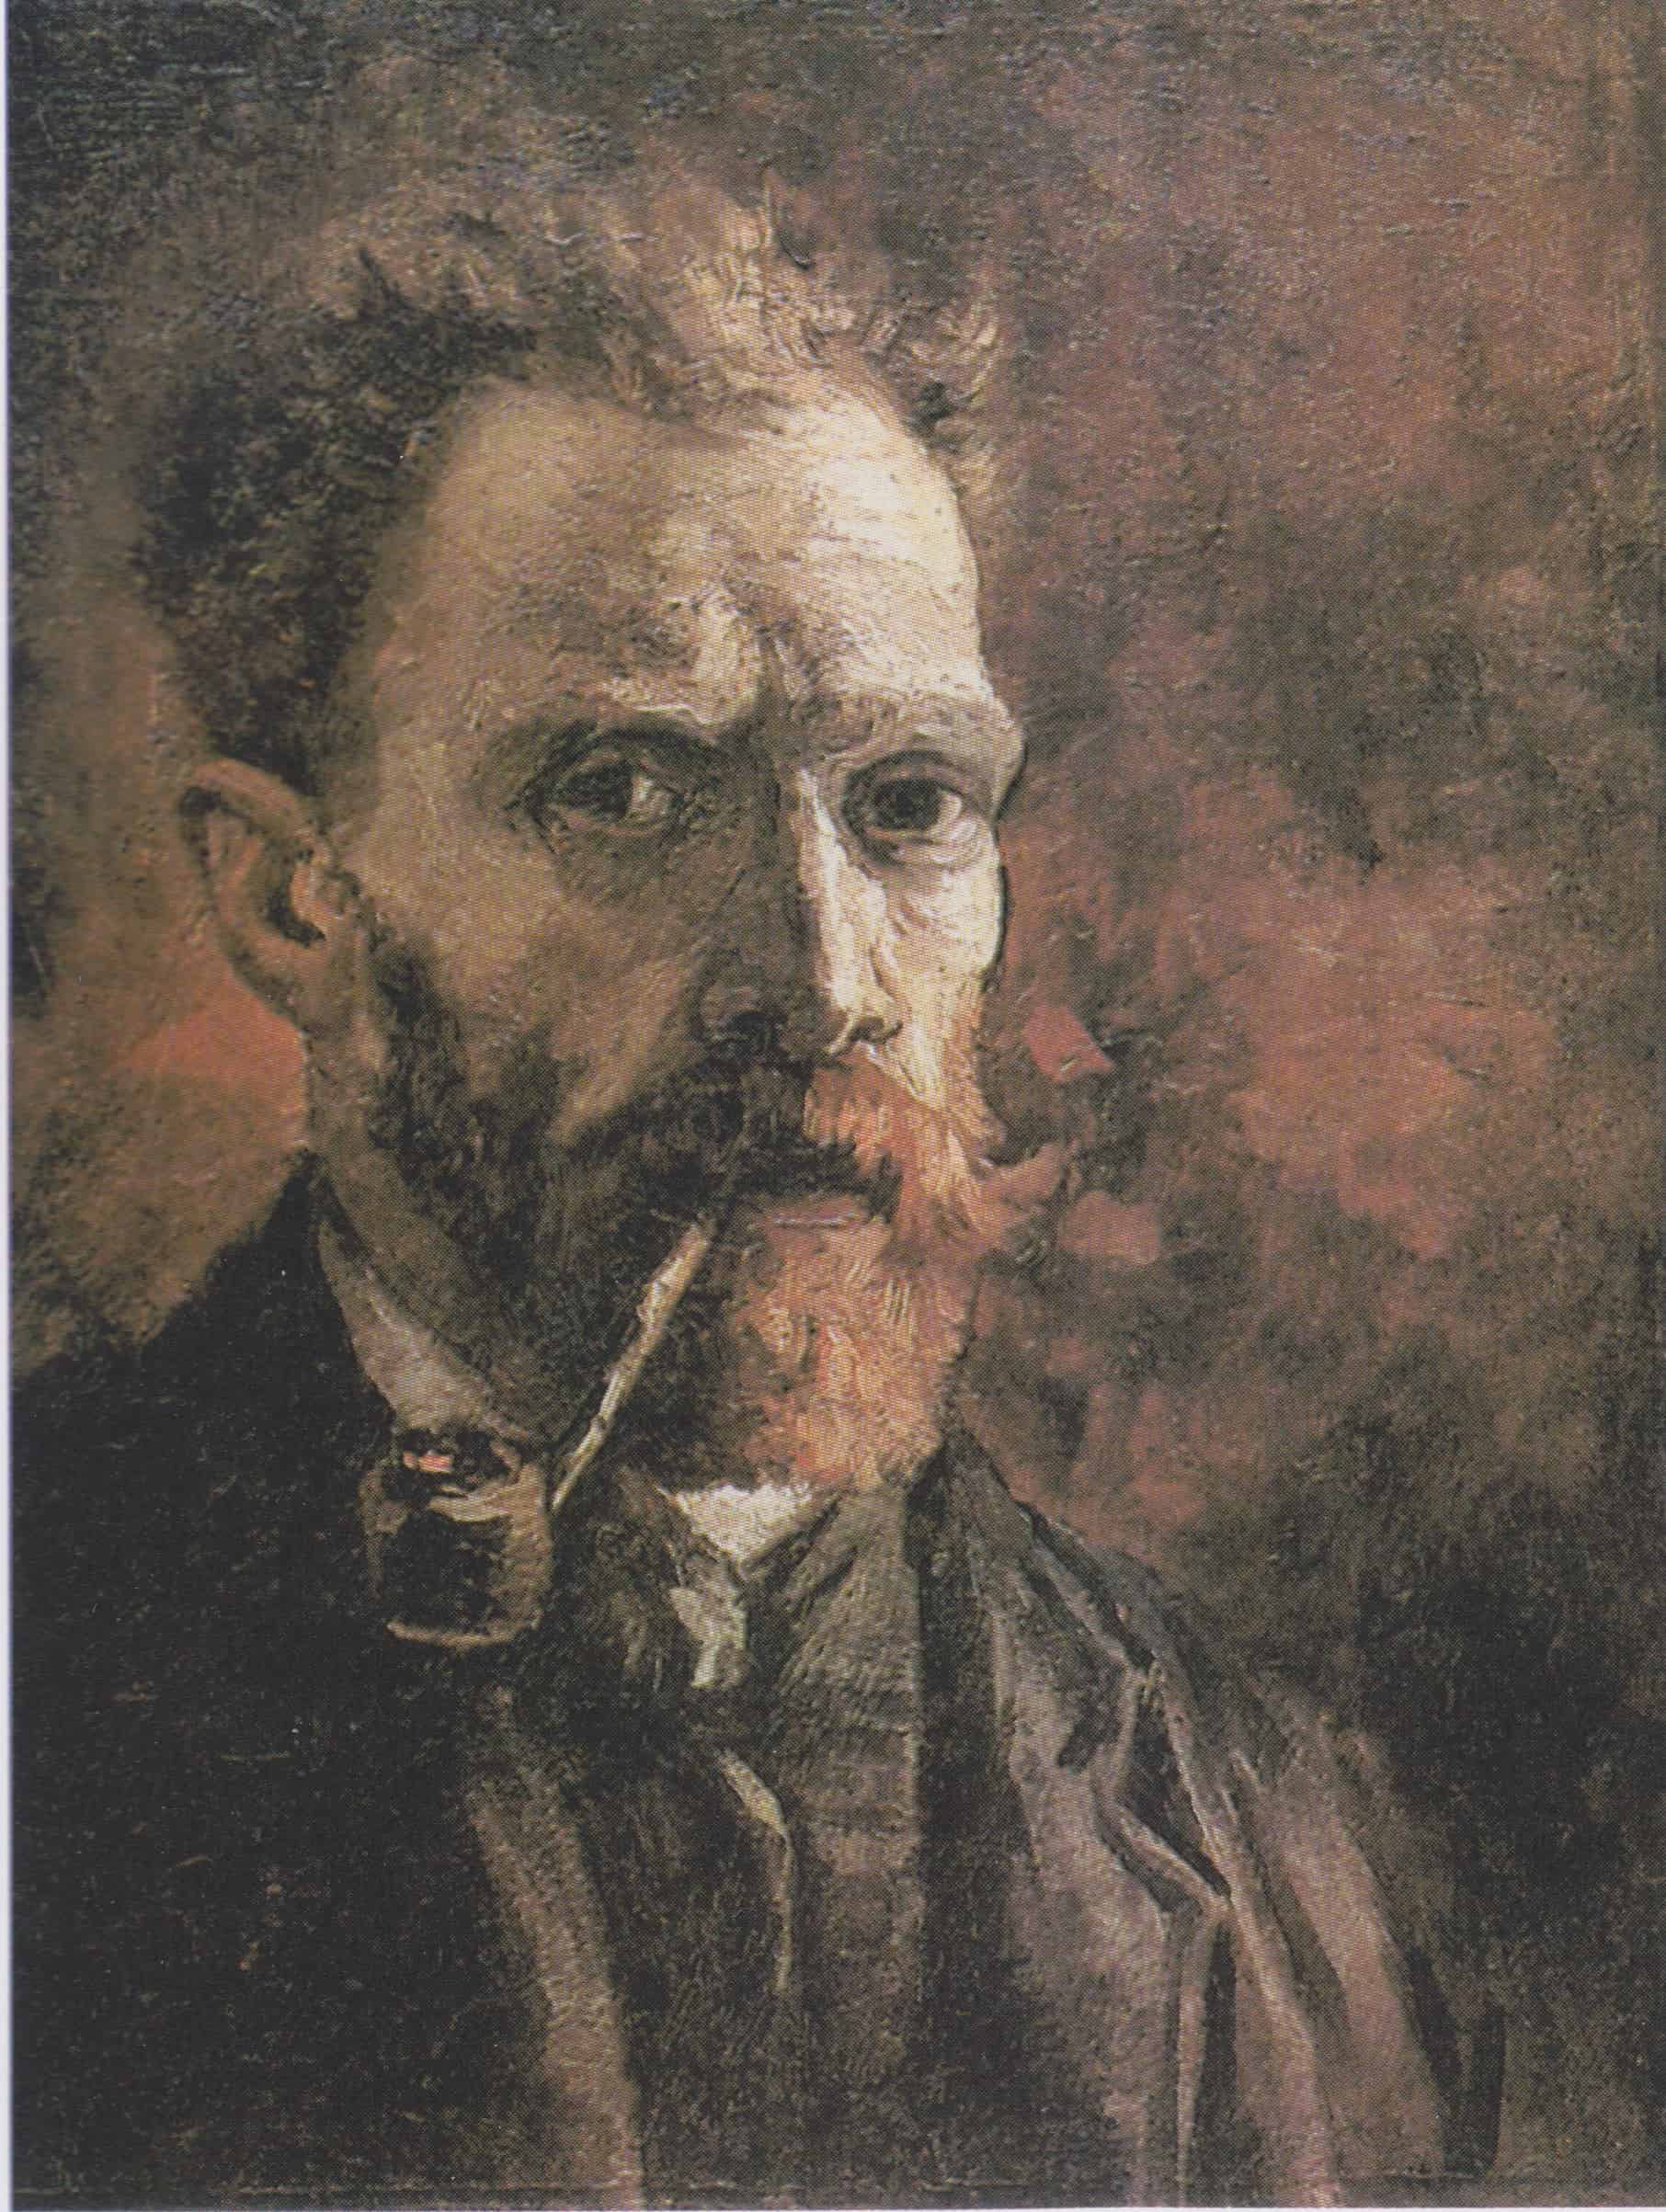 Selbstporträts von Vincent van Gogh, Selbstbildnis mit Pfeife